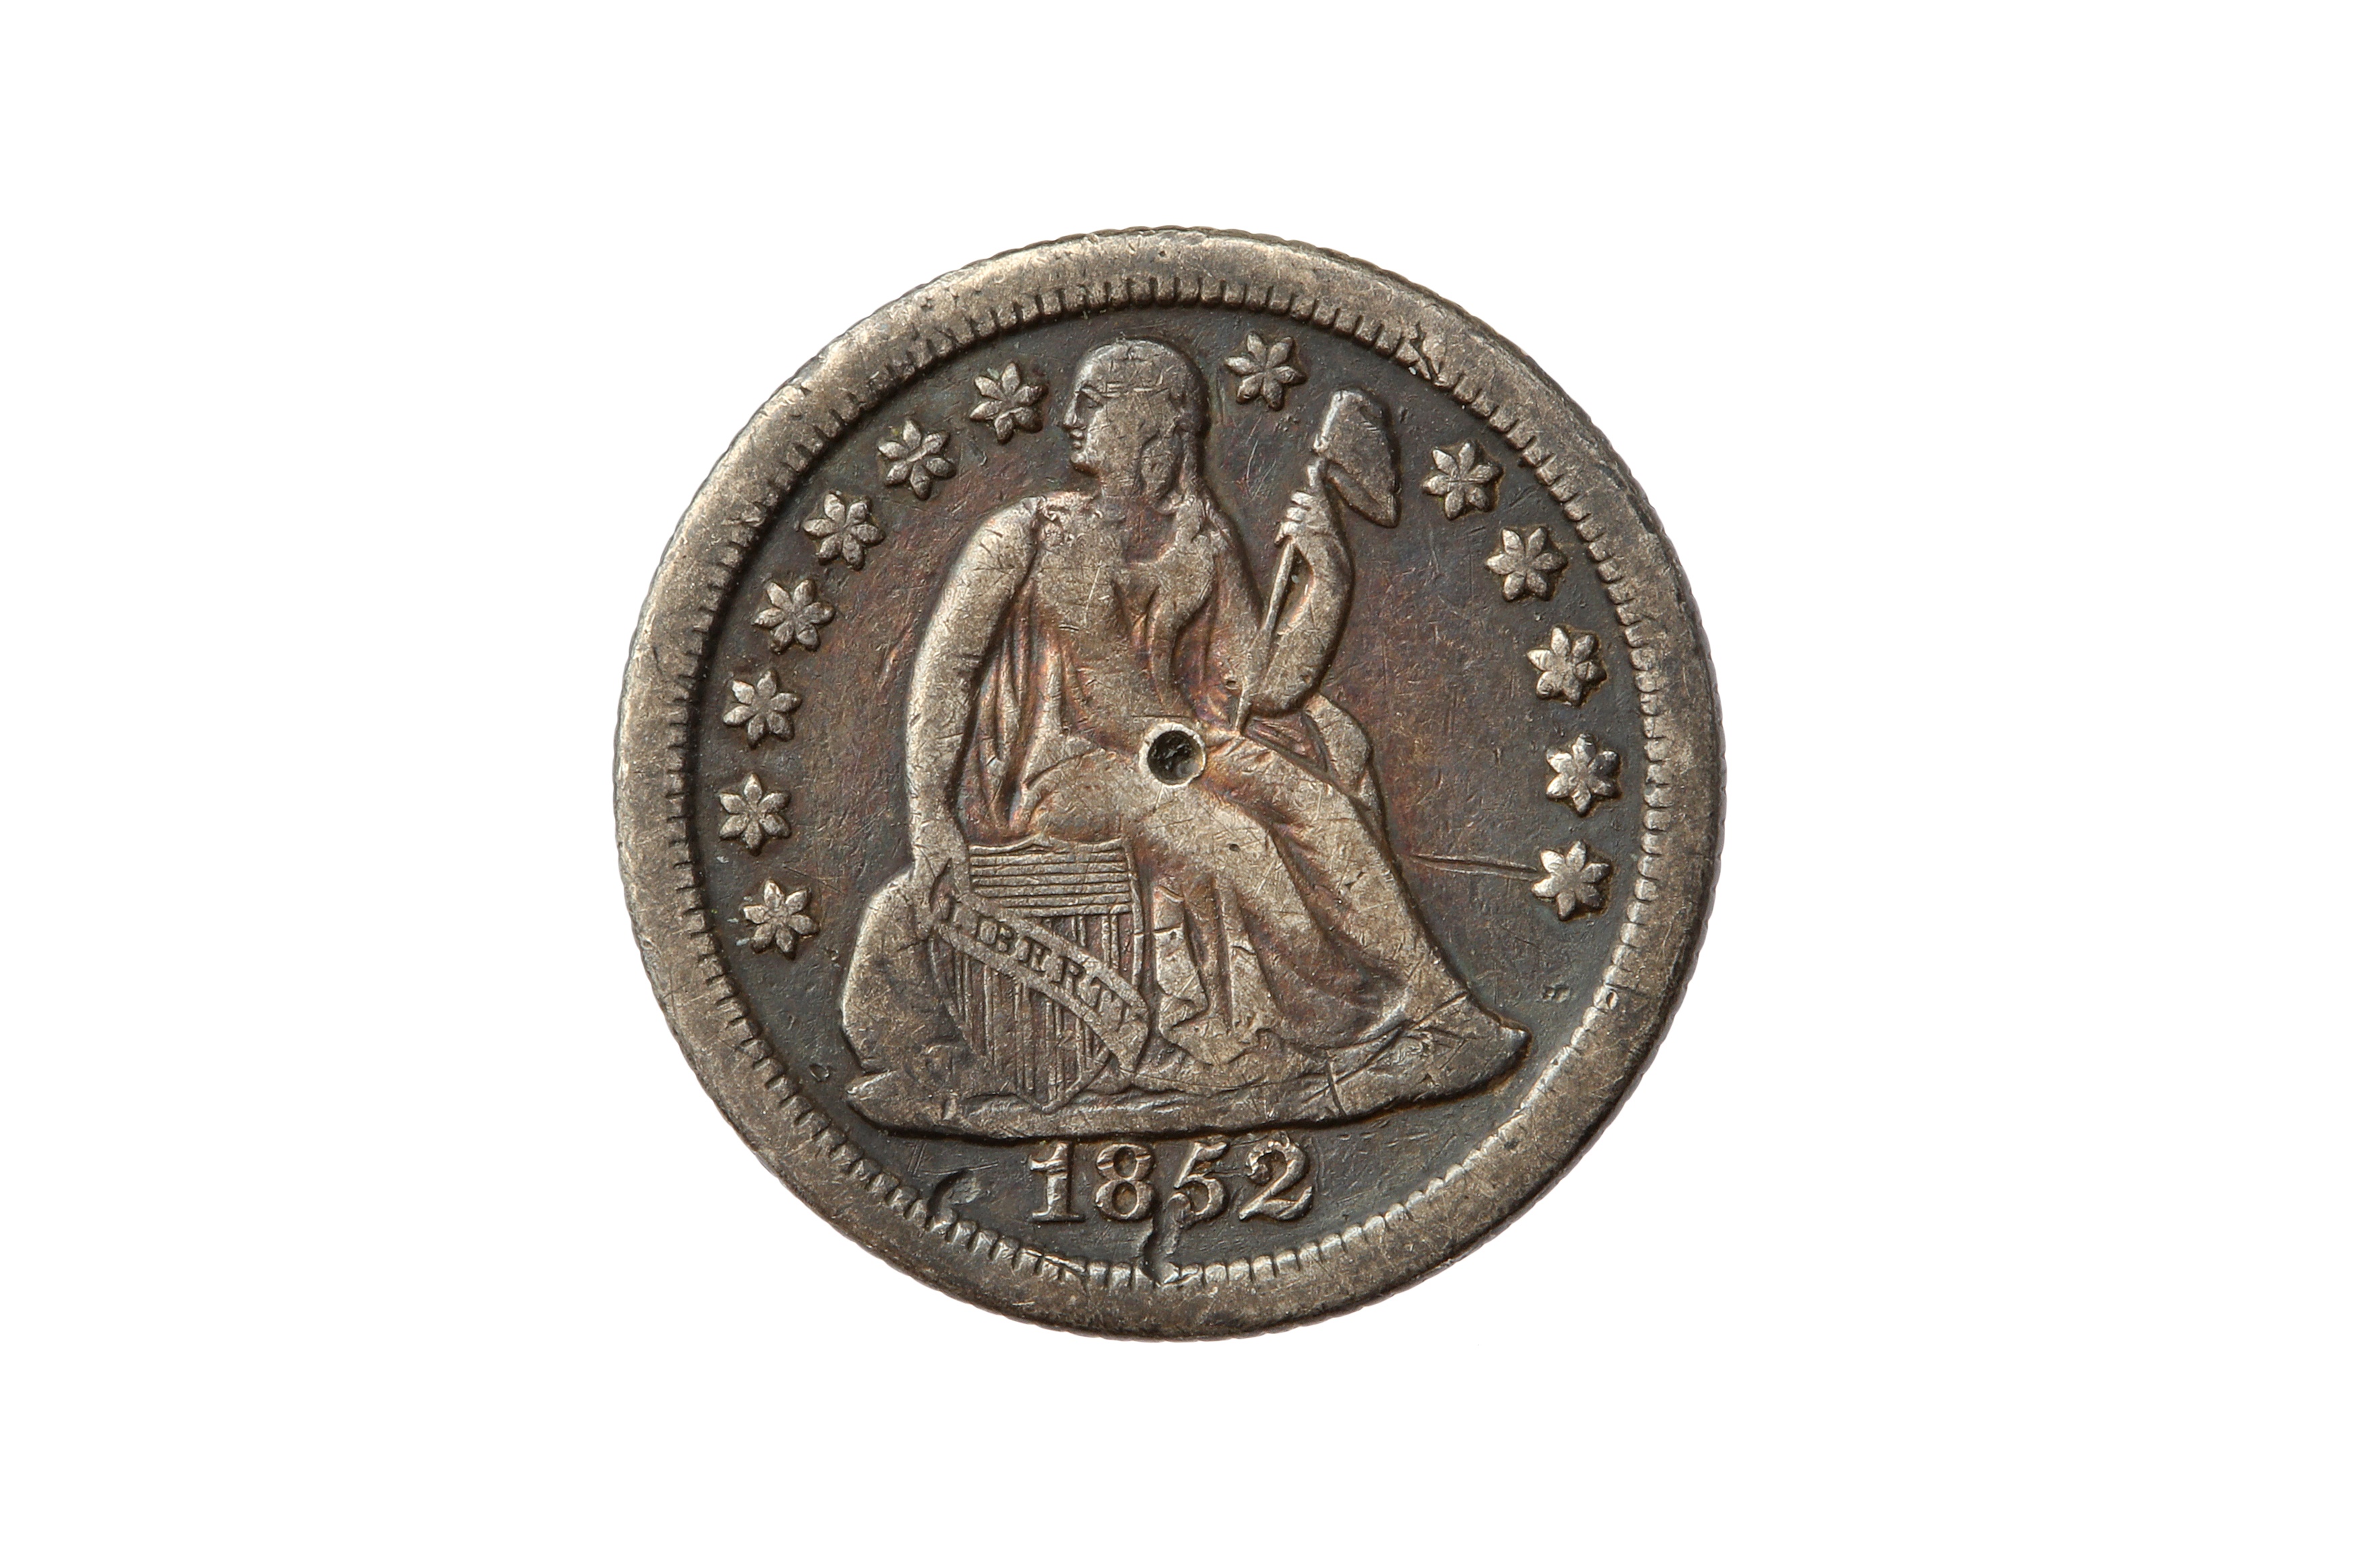 USA, 1852-O 10 CENTS/DIME.